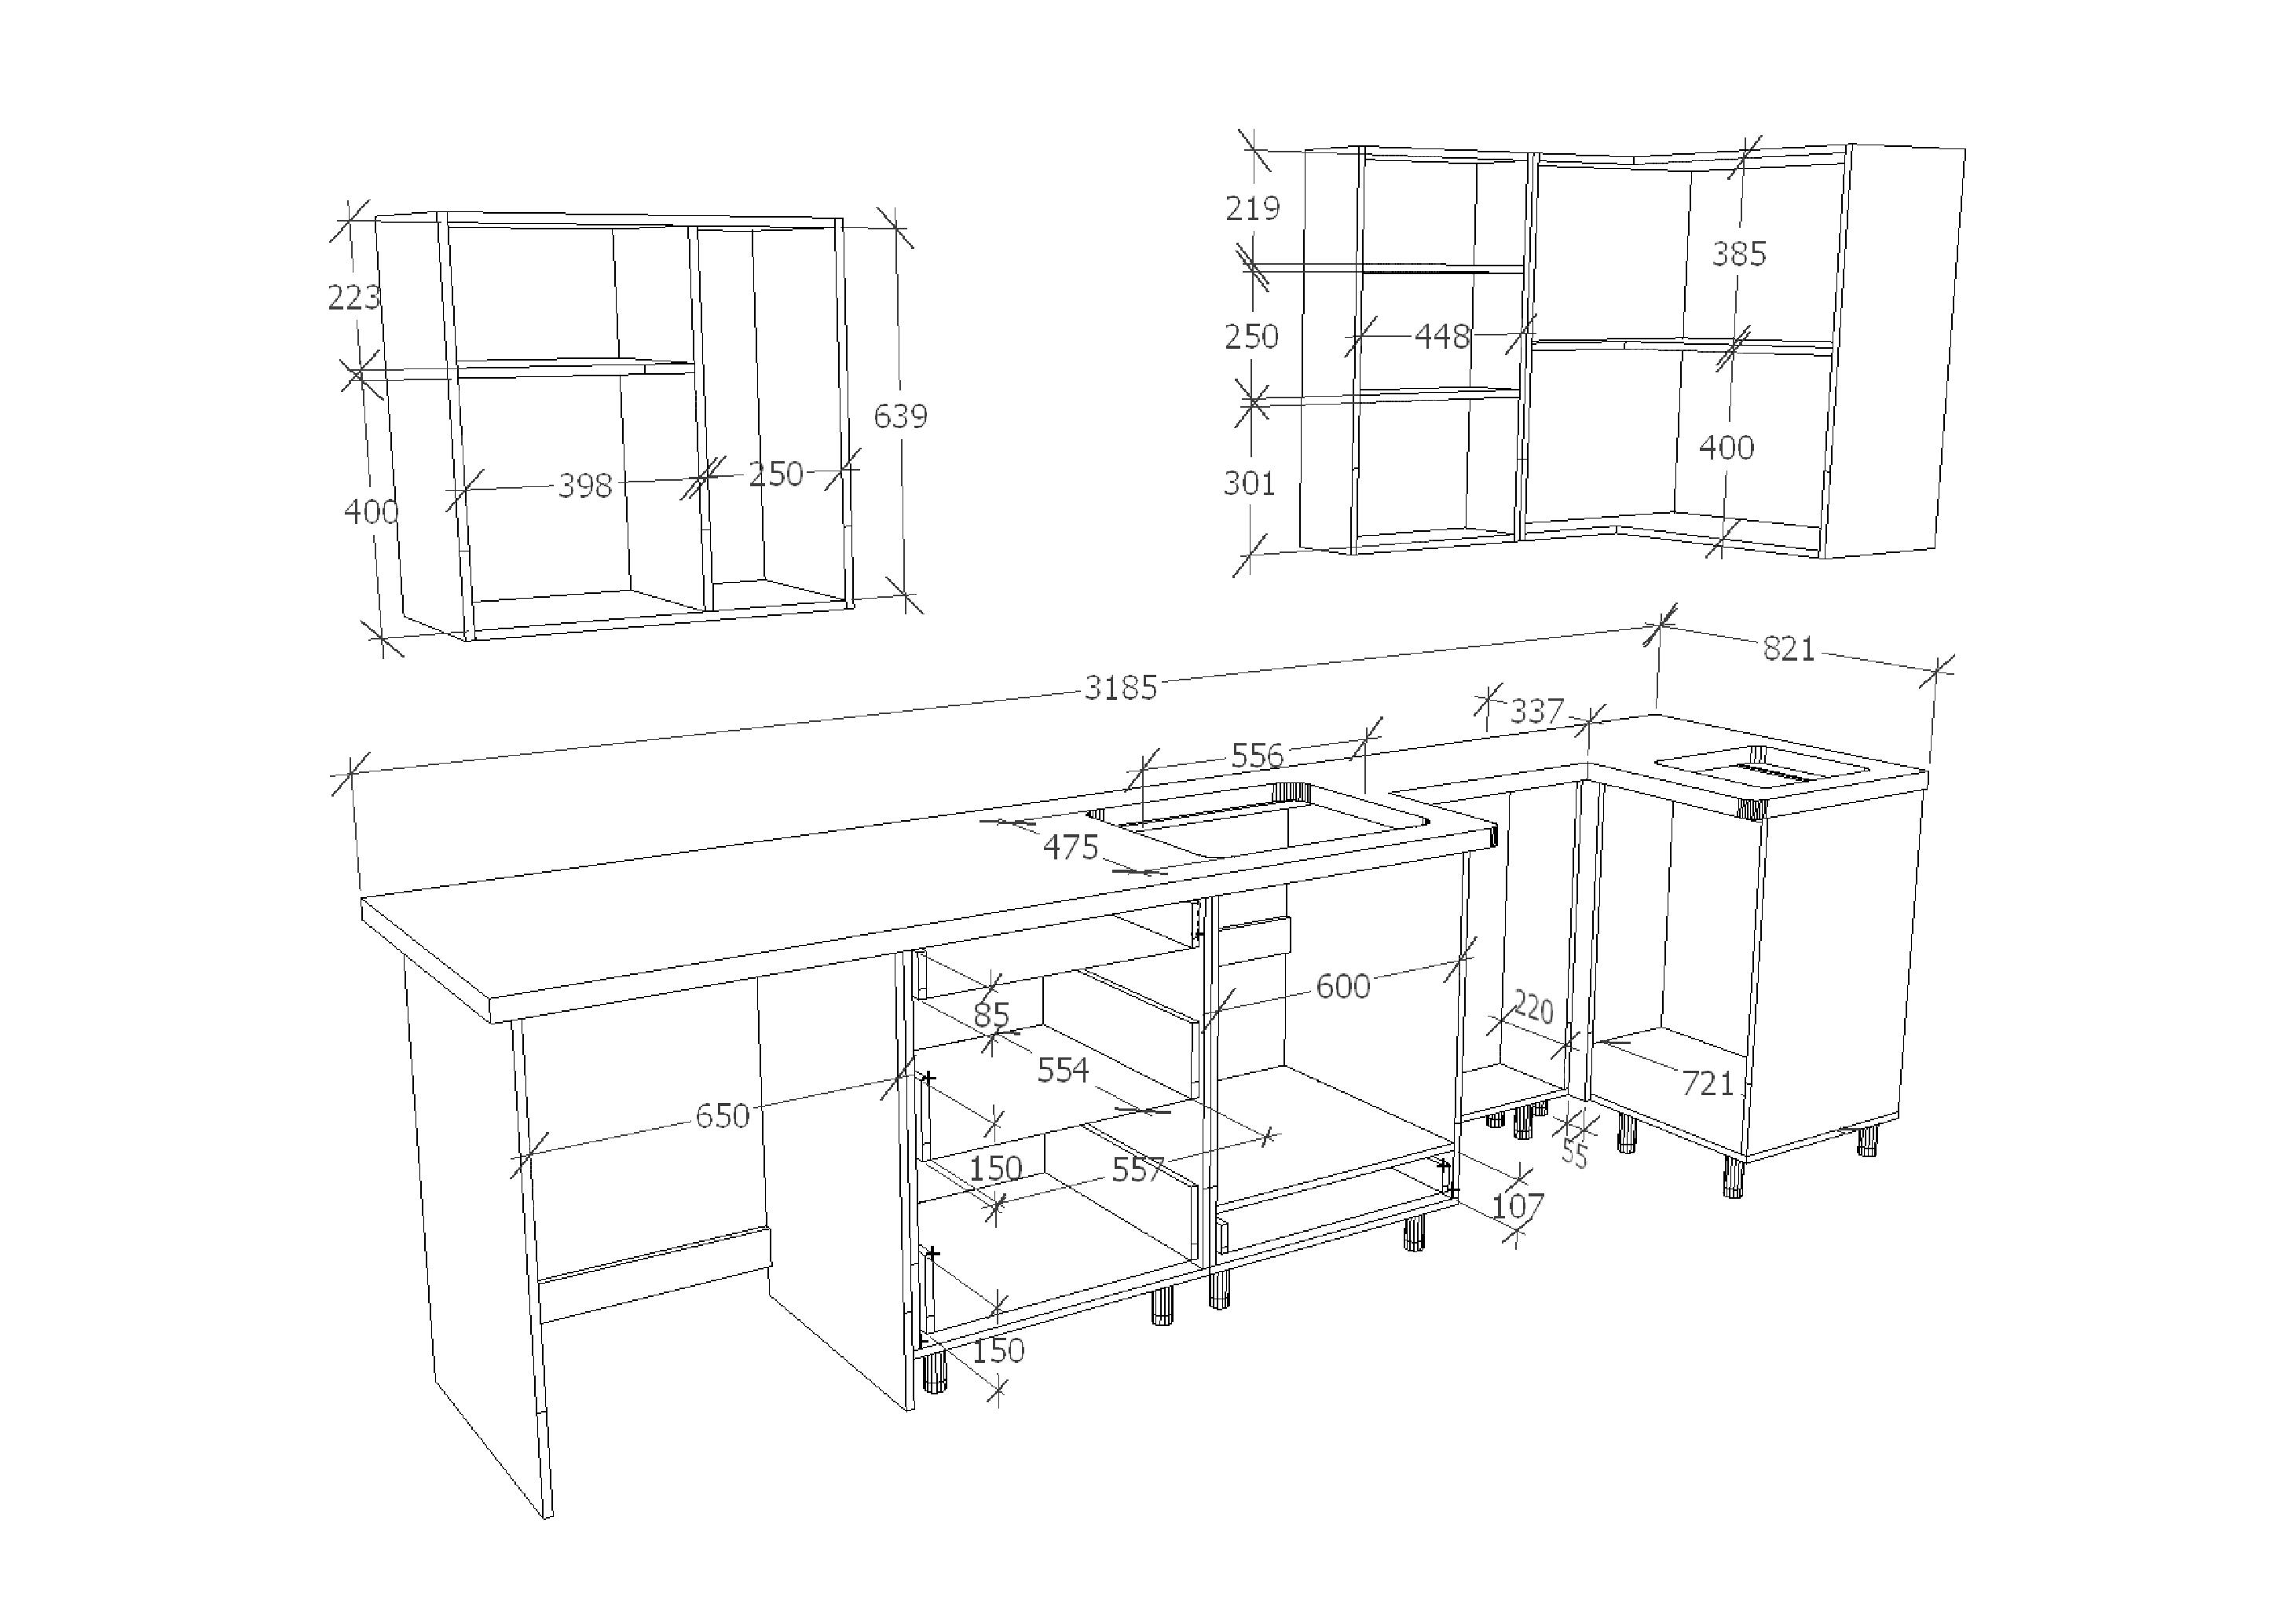 размеры деталей кухонных шкафов для распила